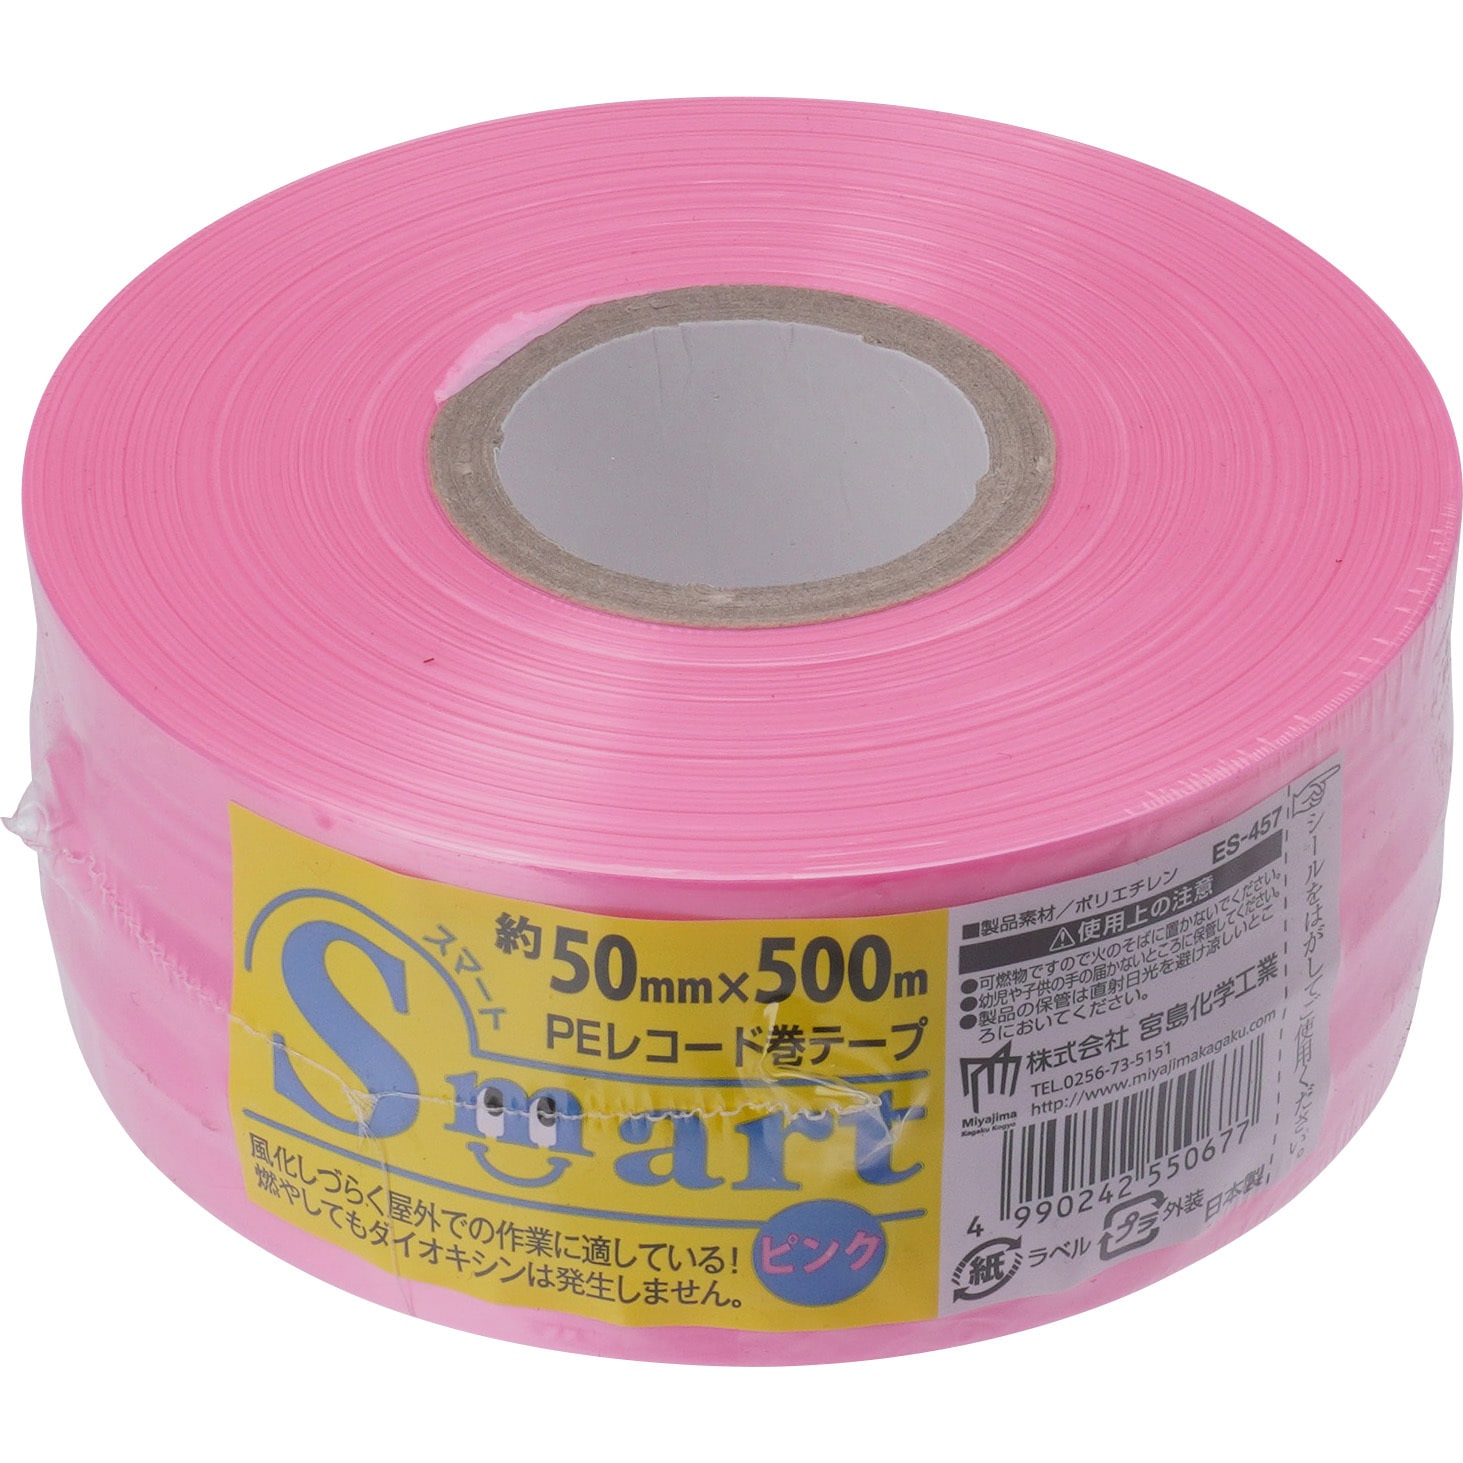 ローヤルシルバーテープ平巻ピンク50mm約500m30巻 - 3